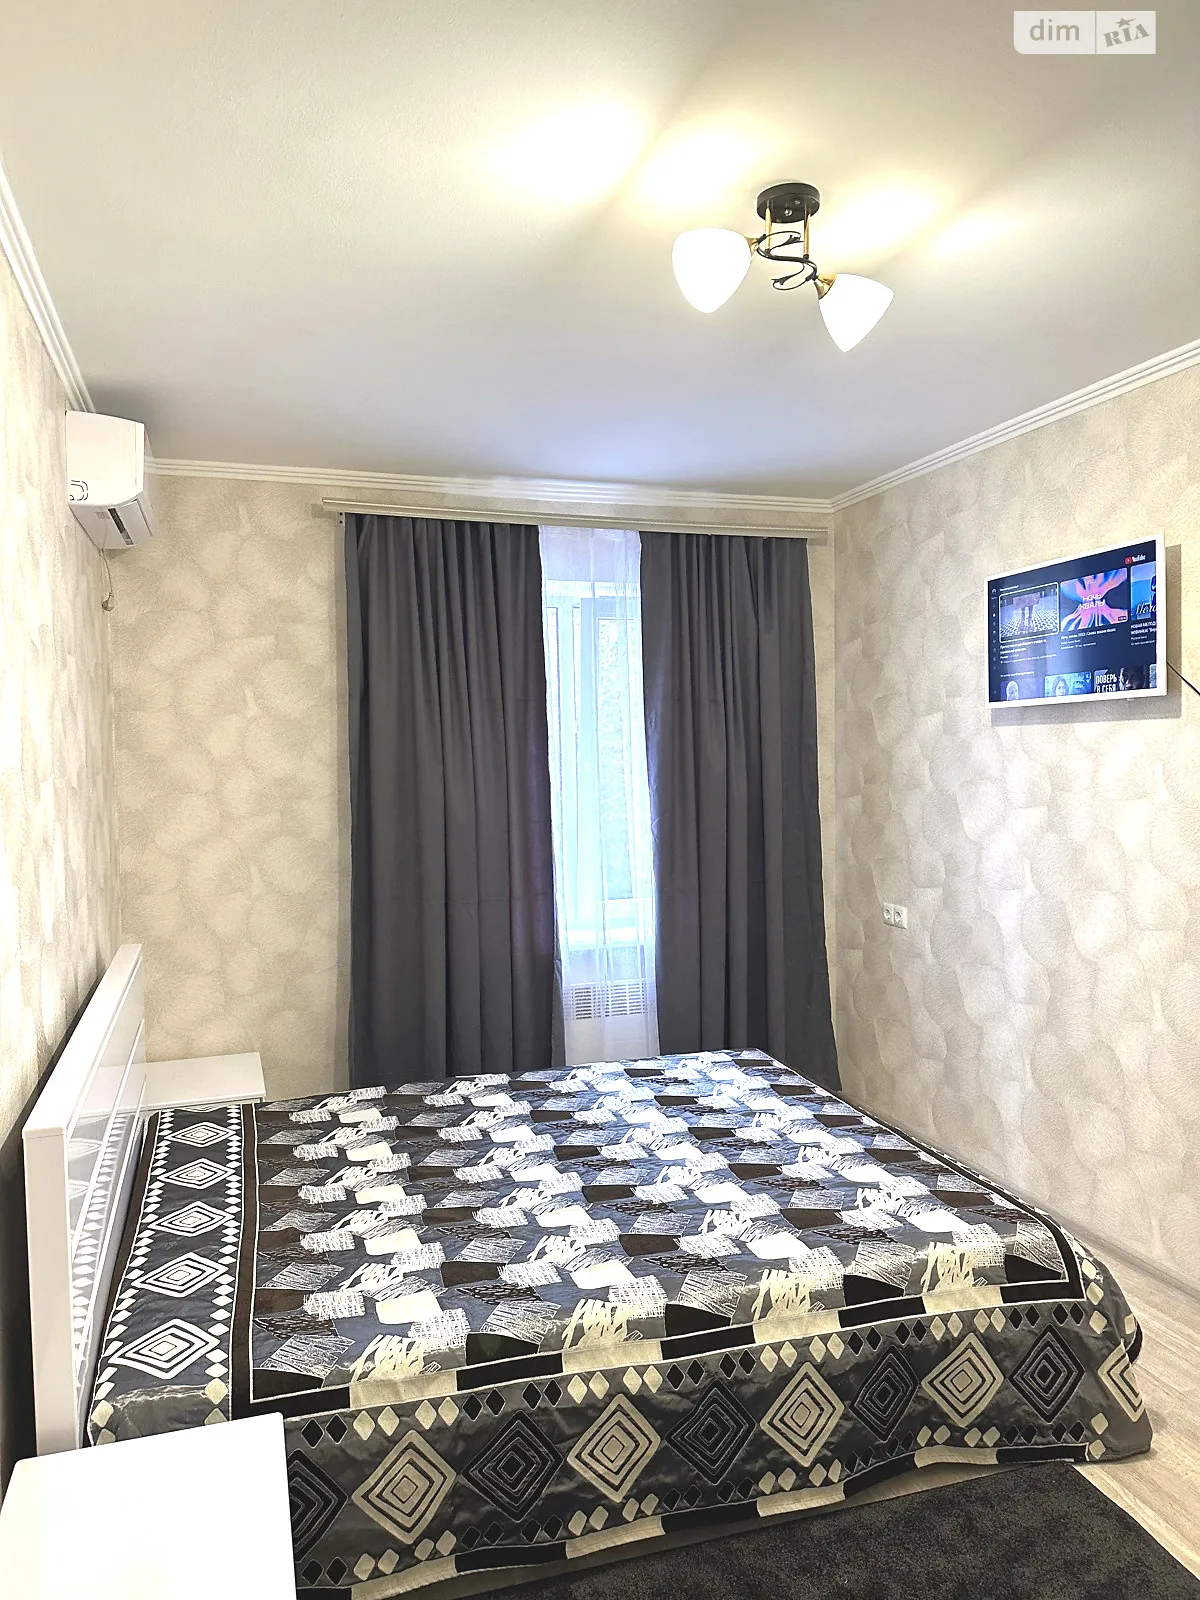 Здається в оренду 1-кімнатна квартира у Кропивницькому, цена: 900 грн - фото 1